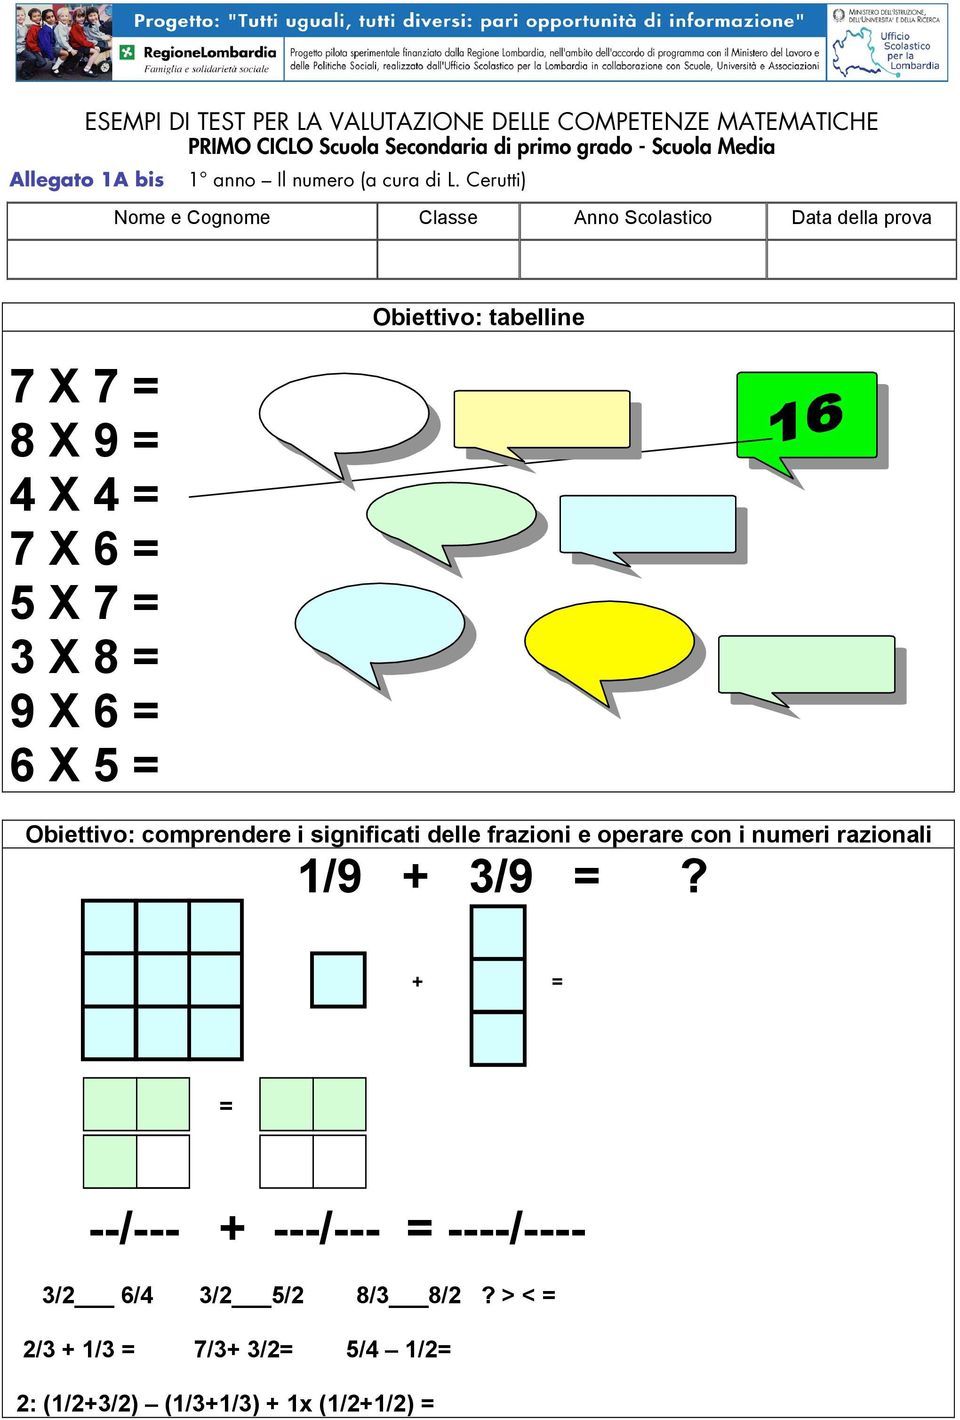 Obiettivo: comprendere i significati delle frazioni e operare con i numeri razionali 1/9 + 3/9